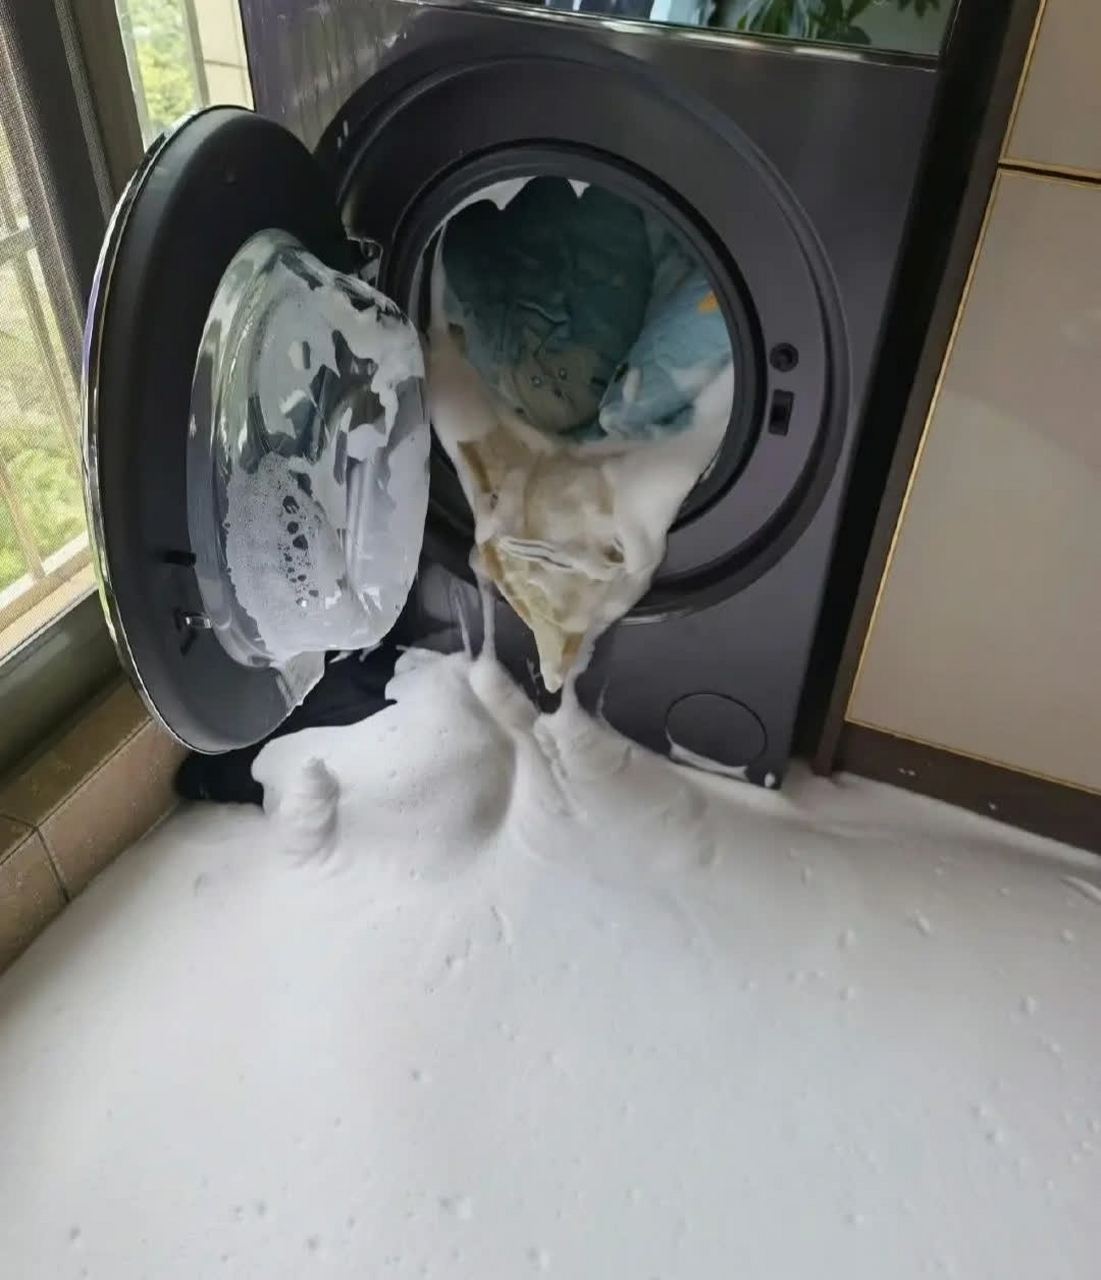 我从超市买的洗衣机,洗一洗就吐出很多泡沫 请问洗衣机是不是坏了?